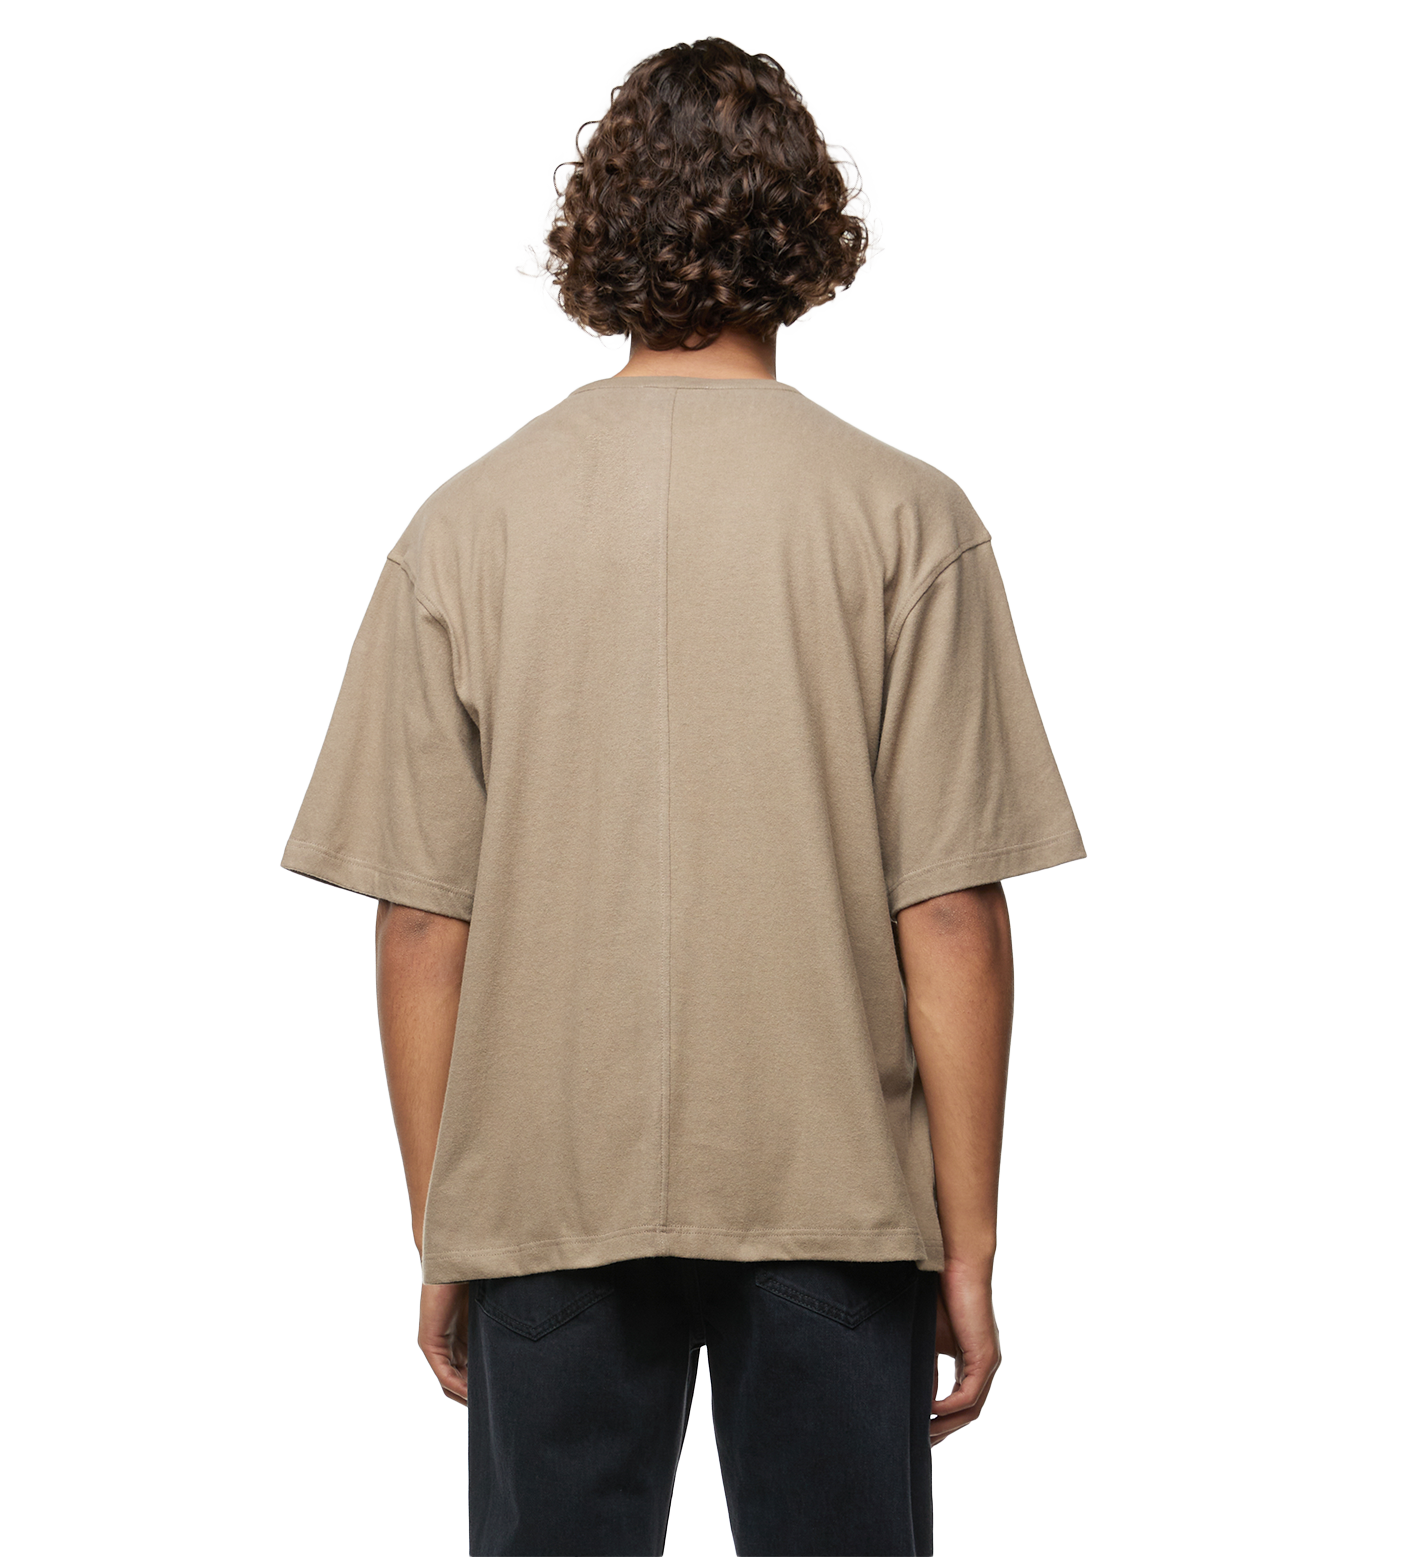 Steven Jersey T-shirt Taupe